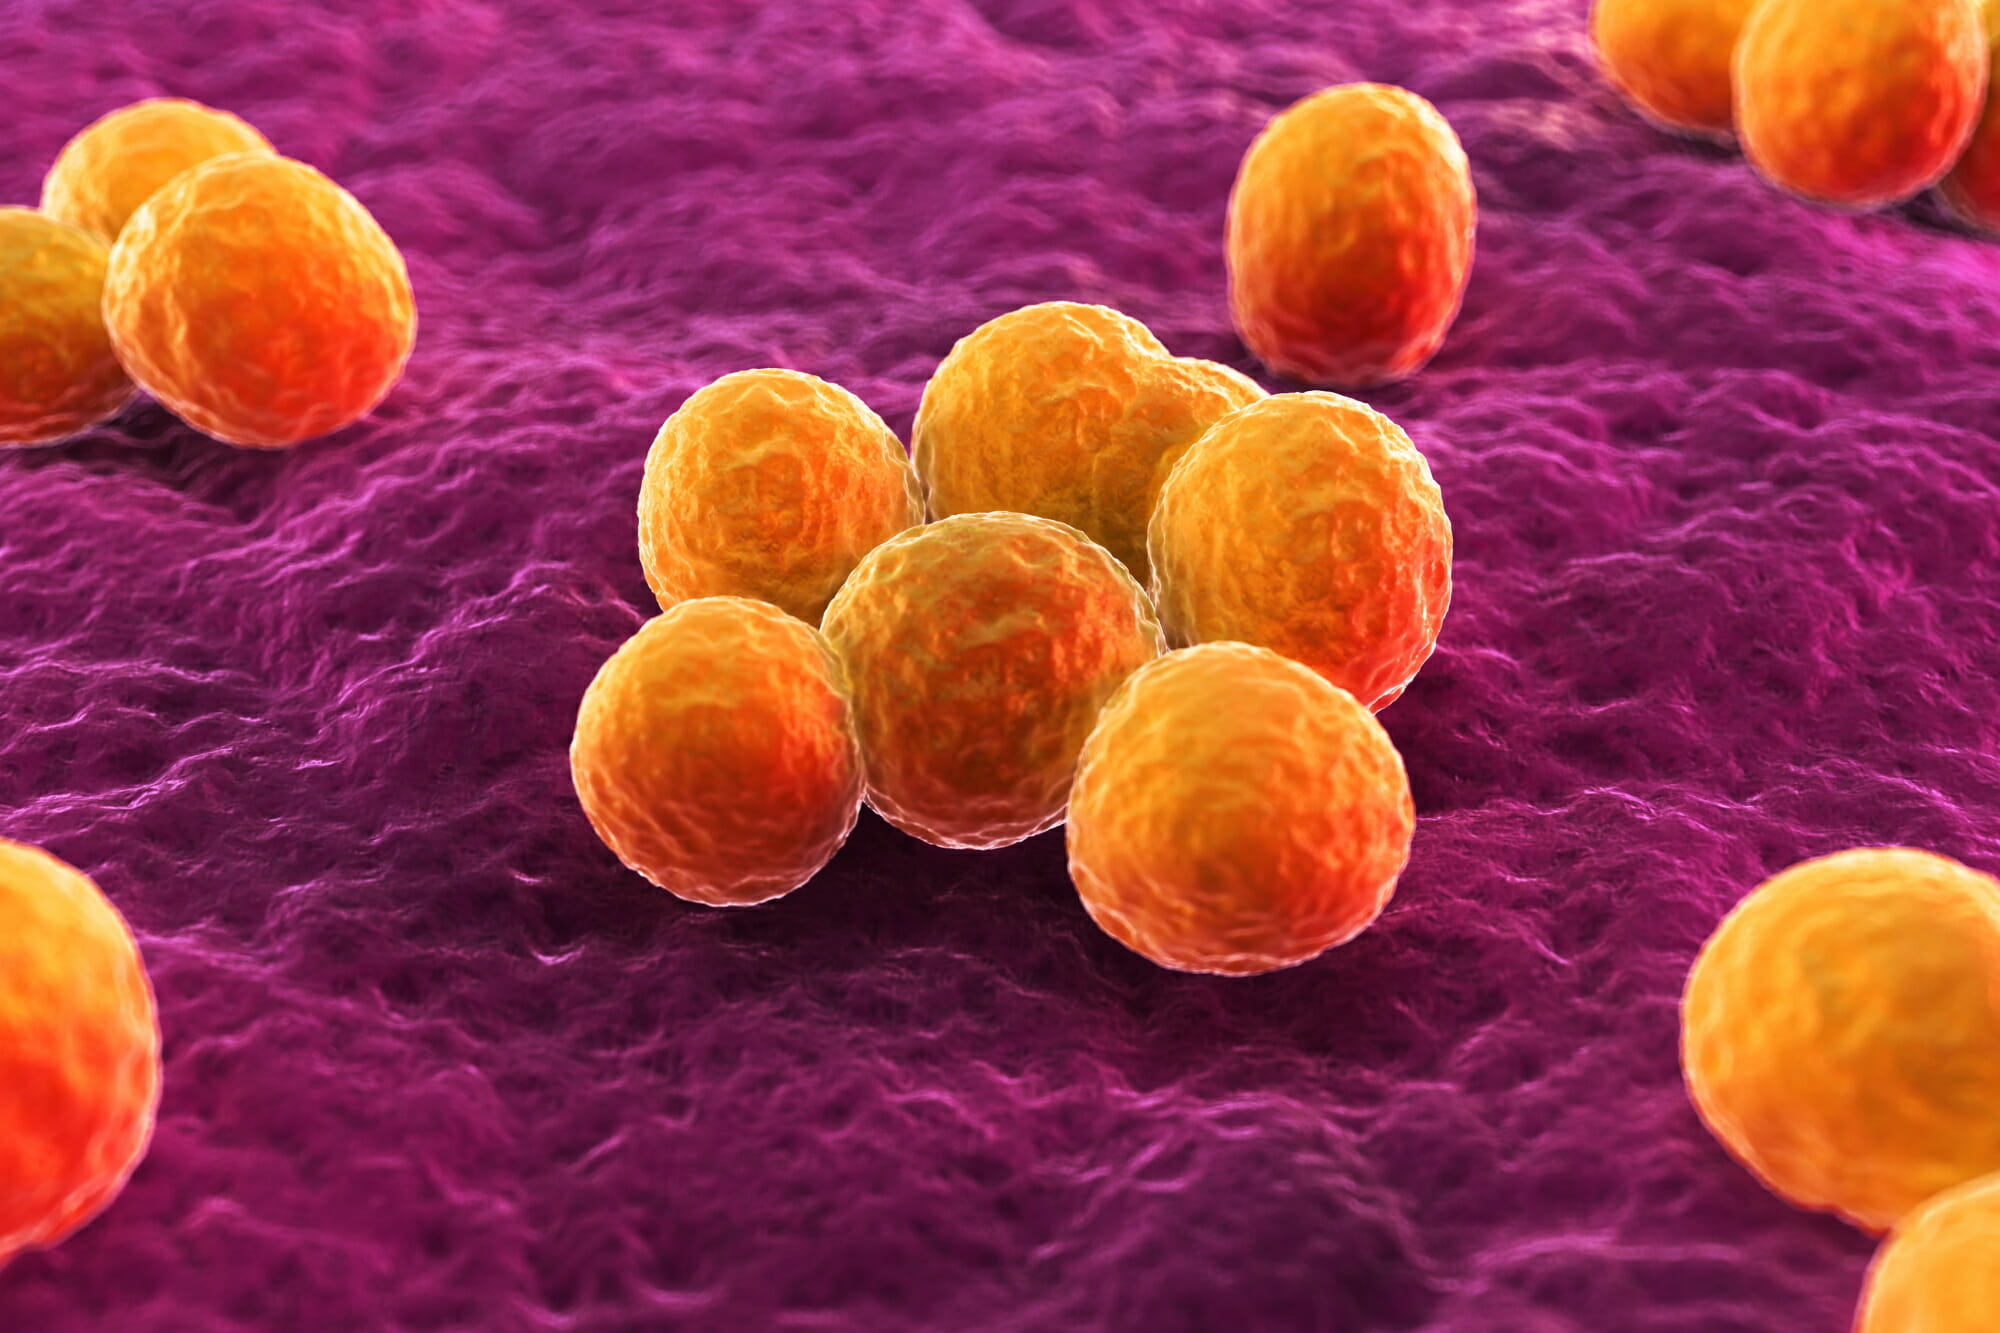 严重细菌感染的IV抗生素Ceftobiprole在美FDA接受审查